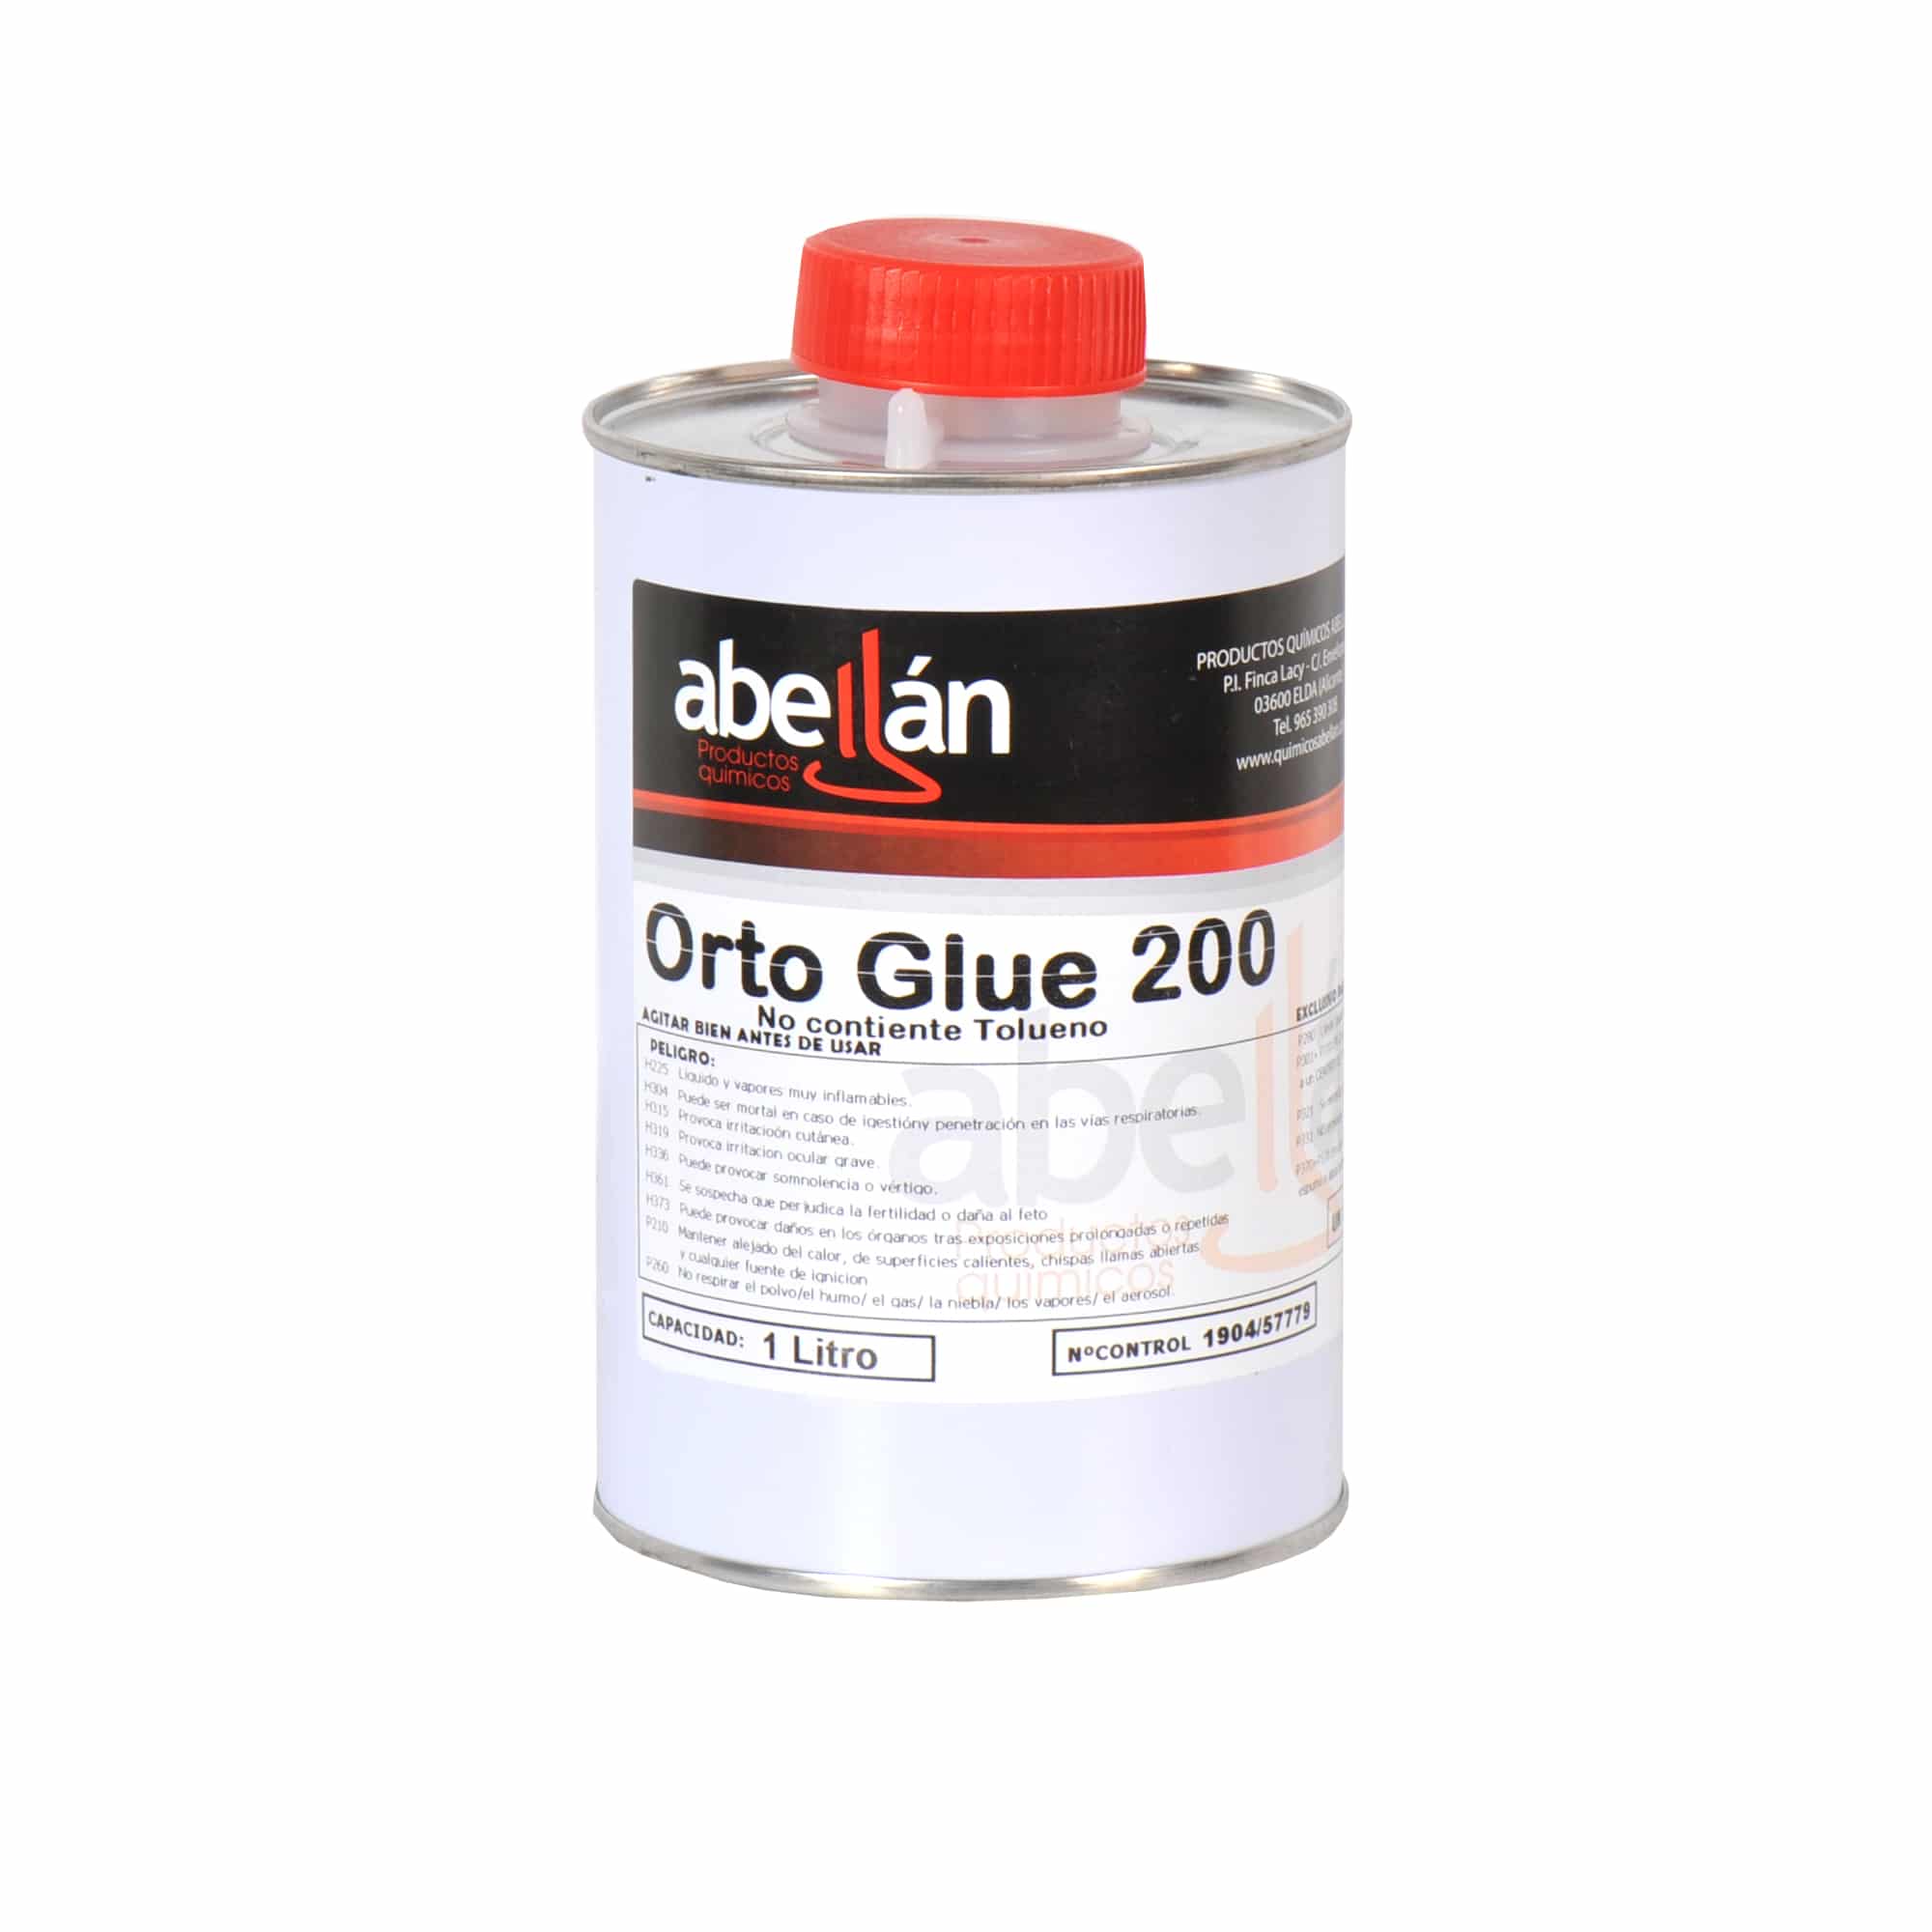 Sermón servidor cemento Pegamento plantillas OrtoGlue 200 - Productos químicos Abellán